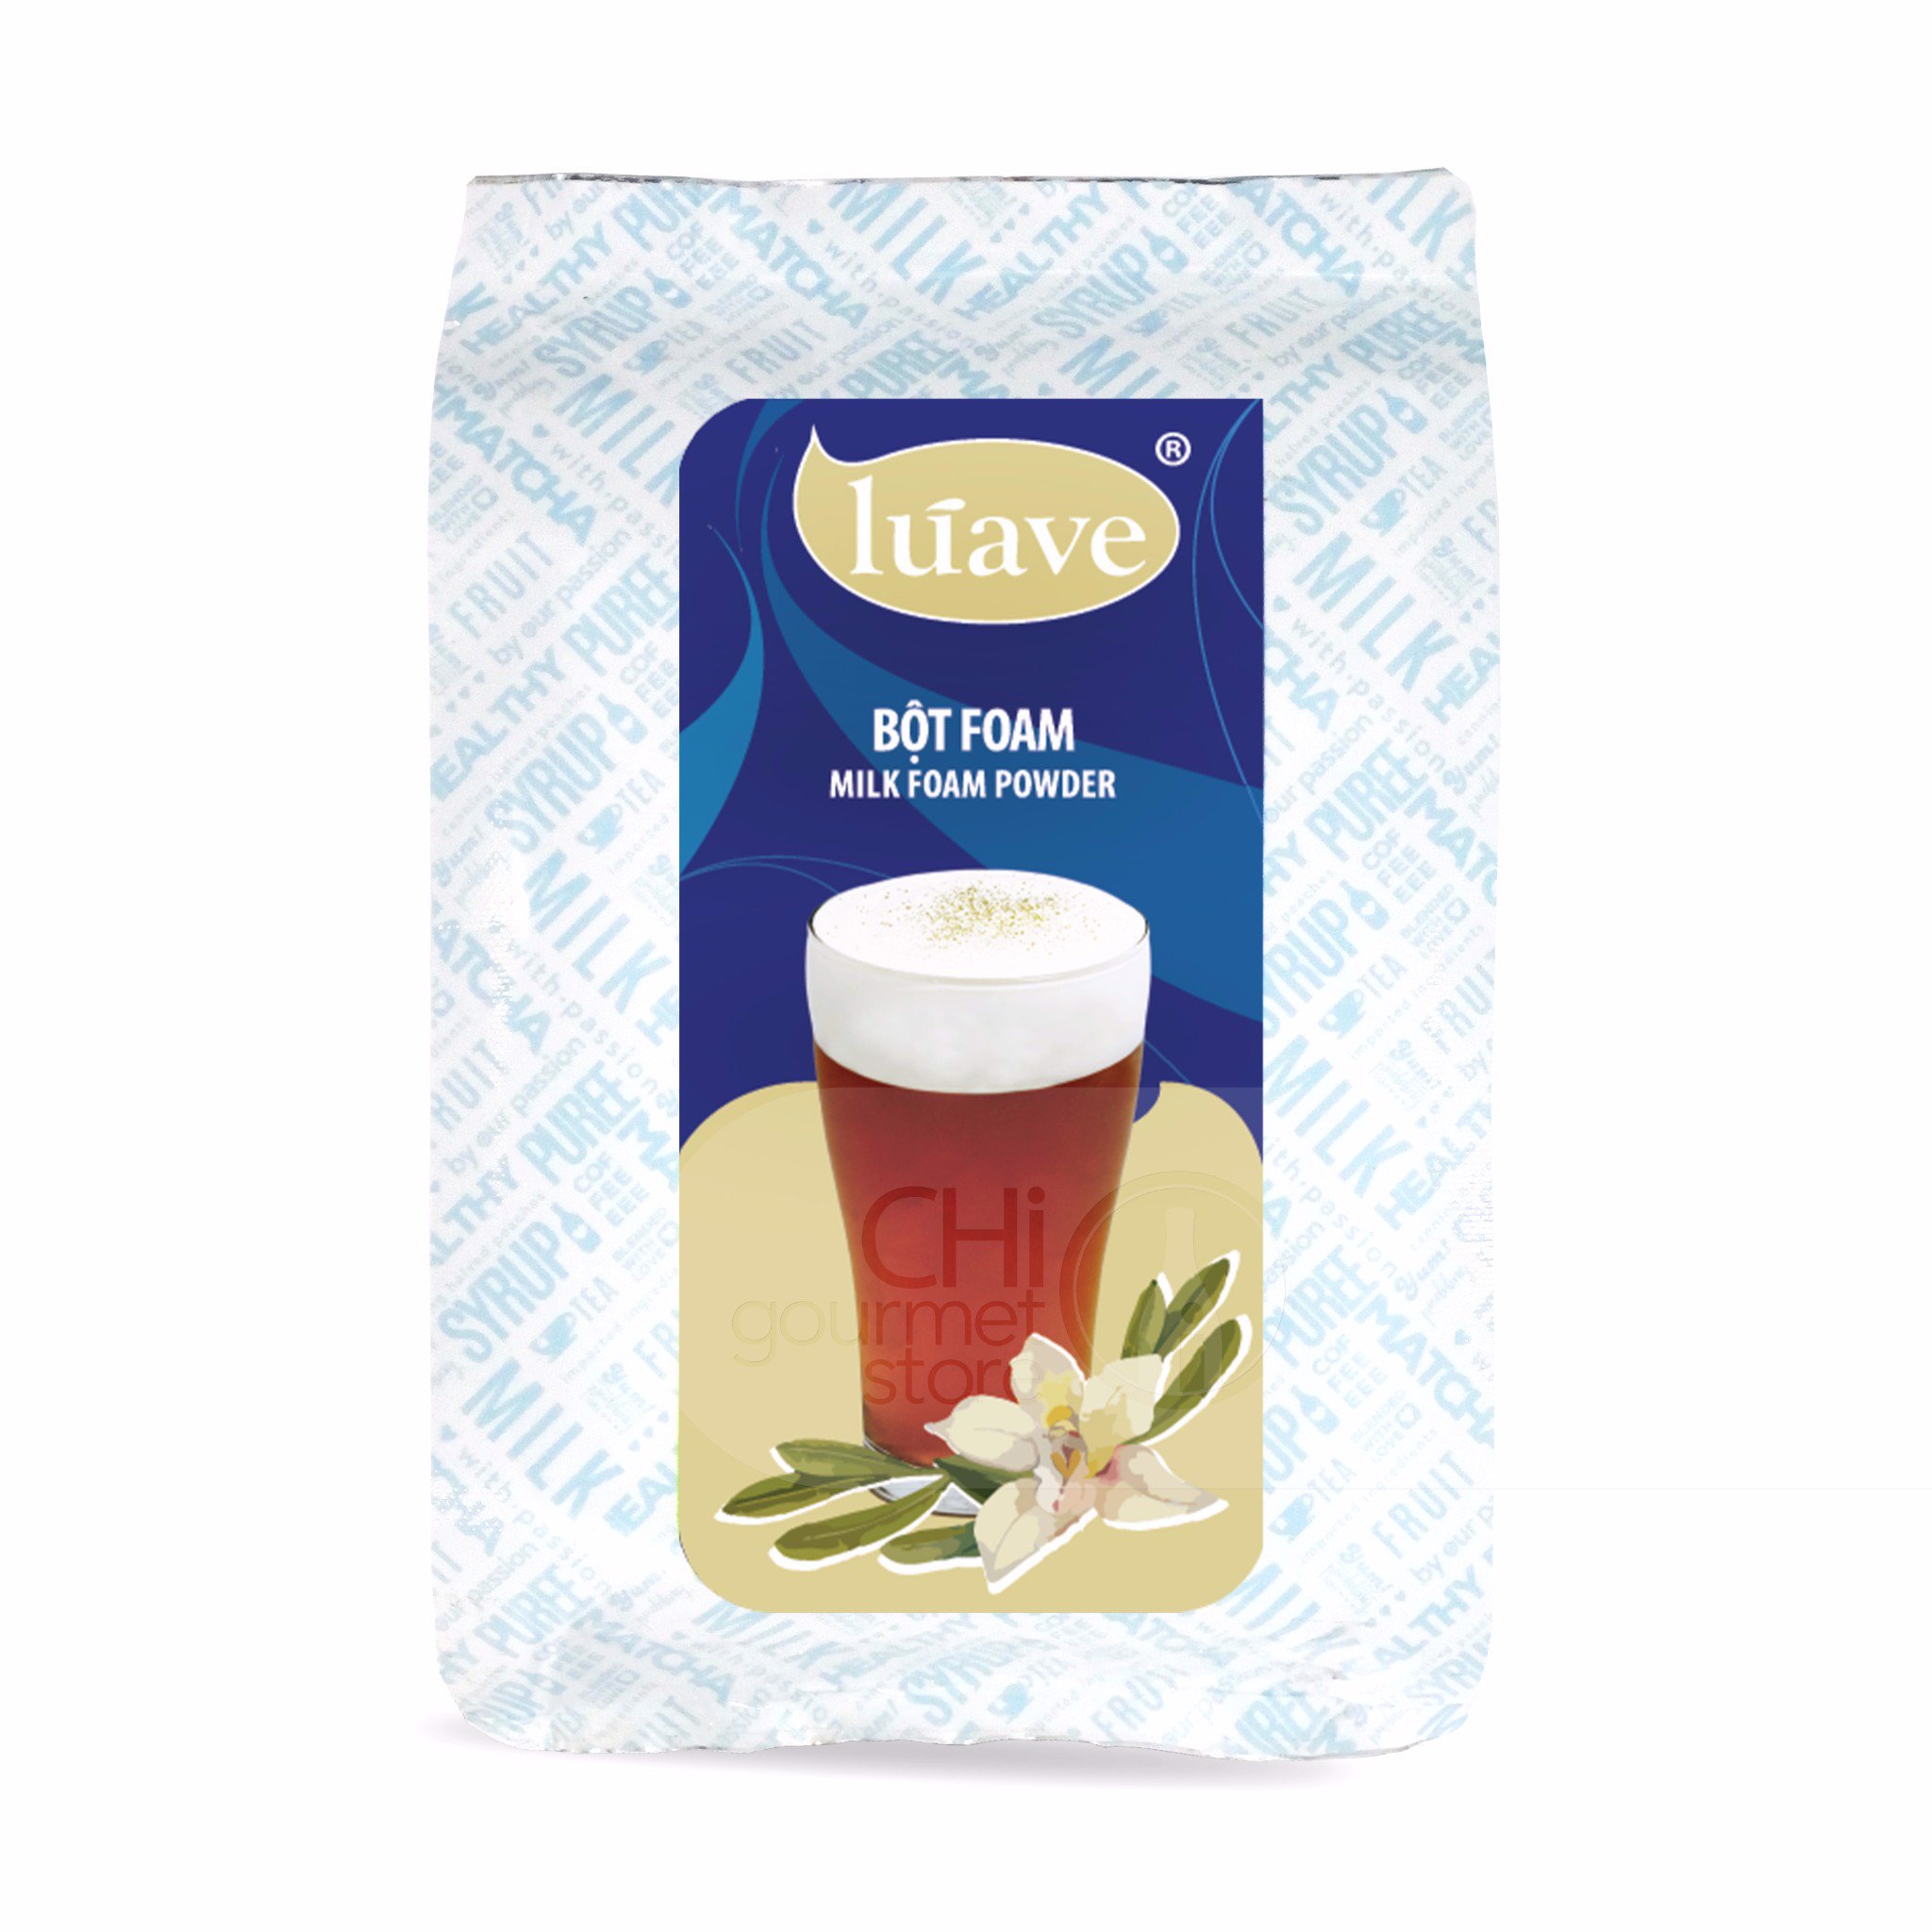 Bột Milk Foam Váng Sữa Kem Mặn Luave Vani Gói 100g Chiết lẻ từ gói 500g